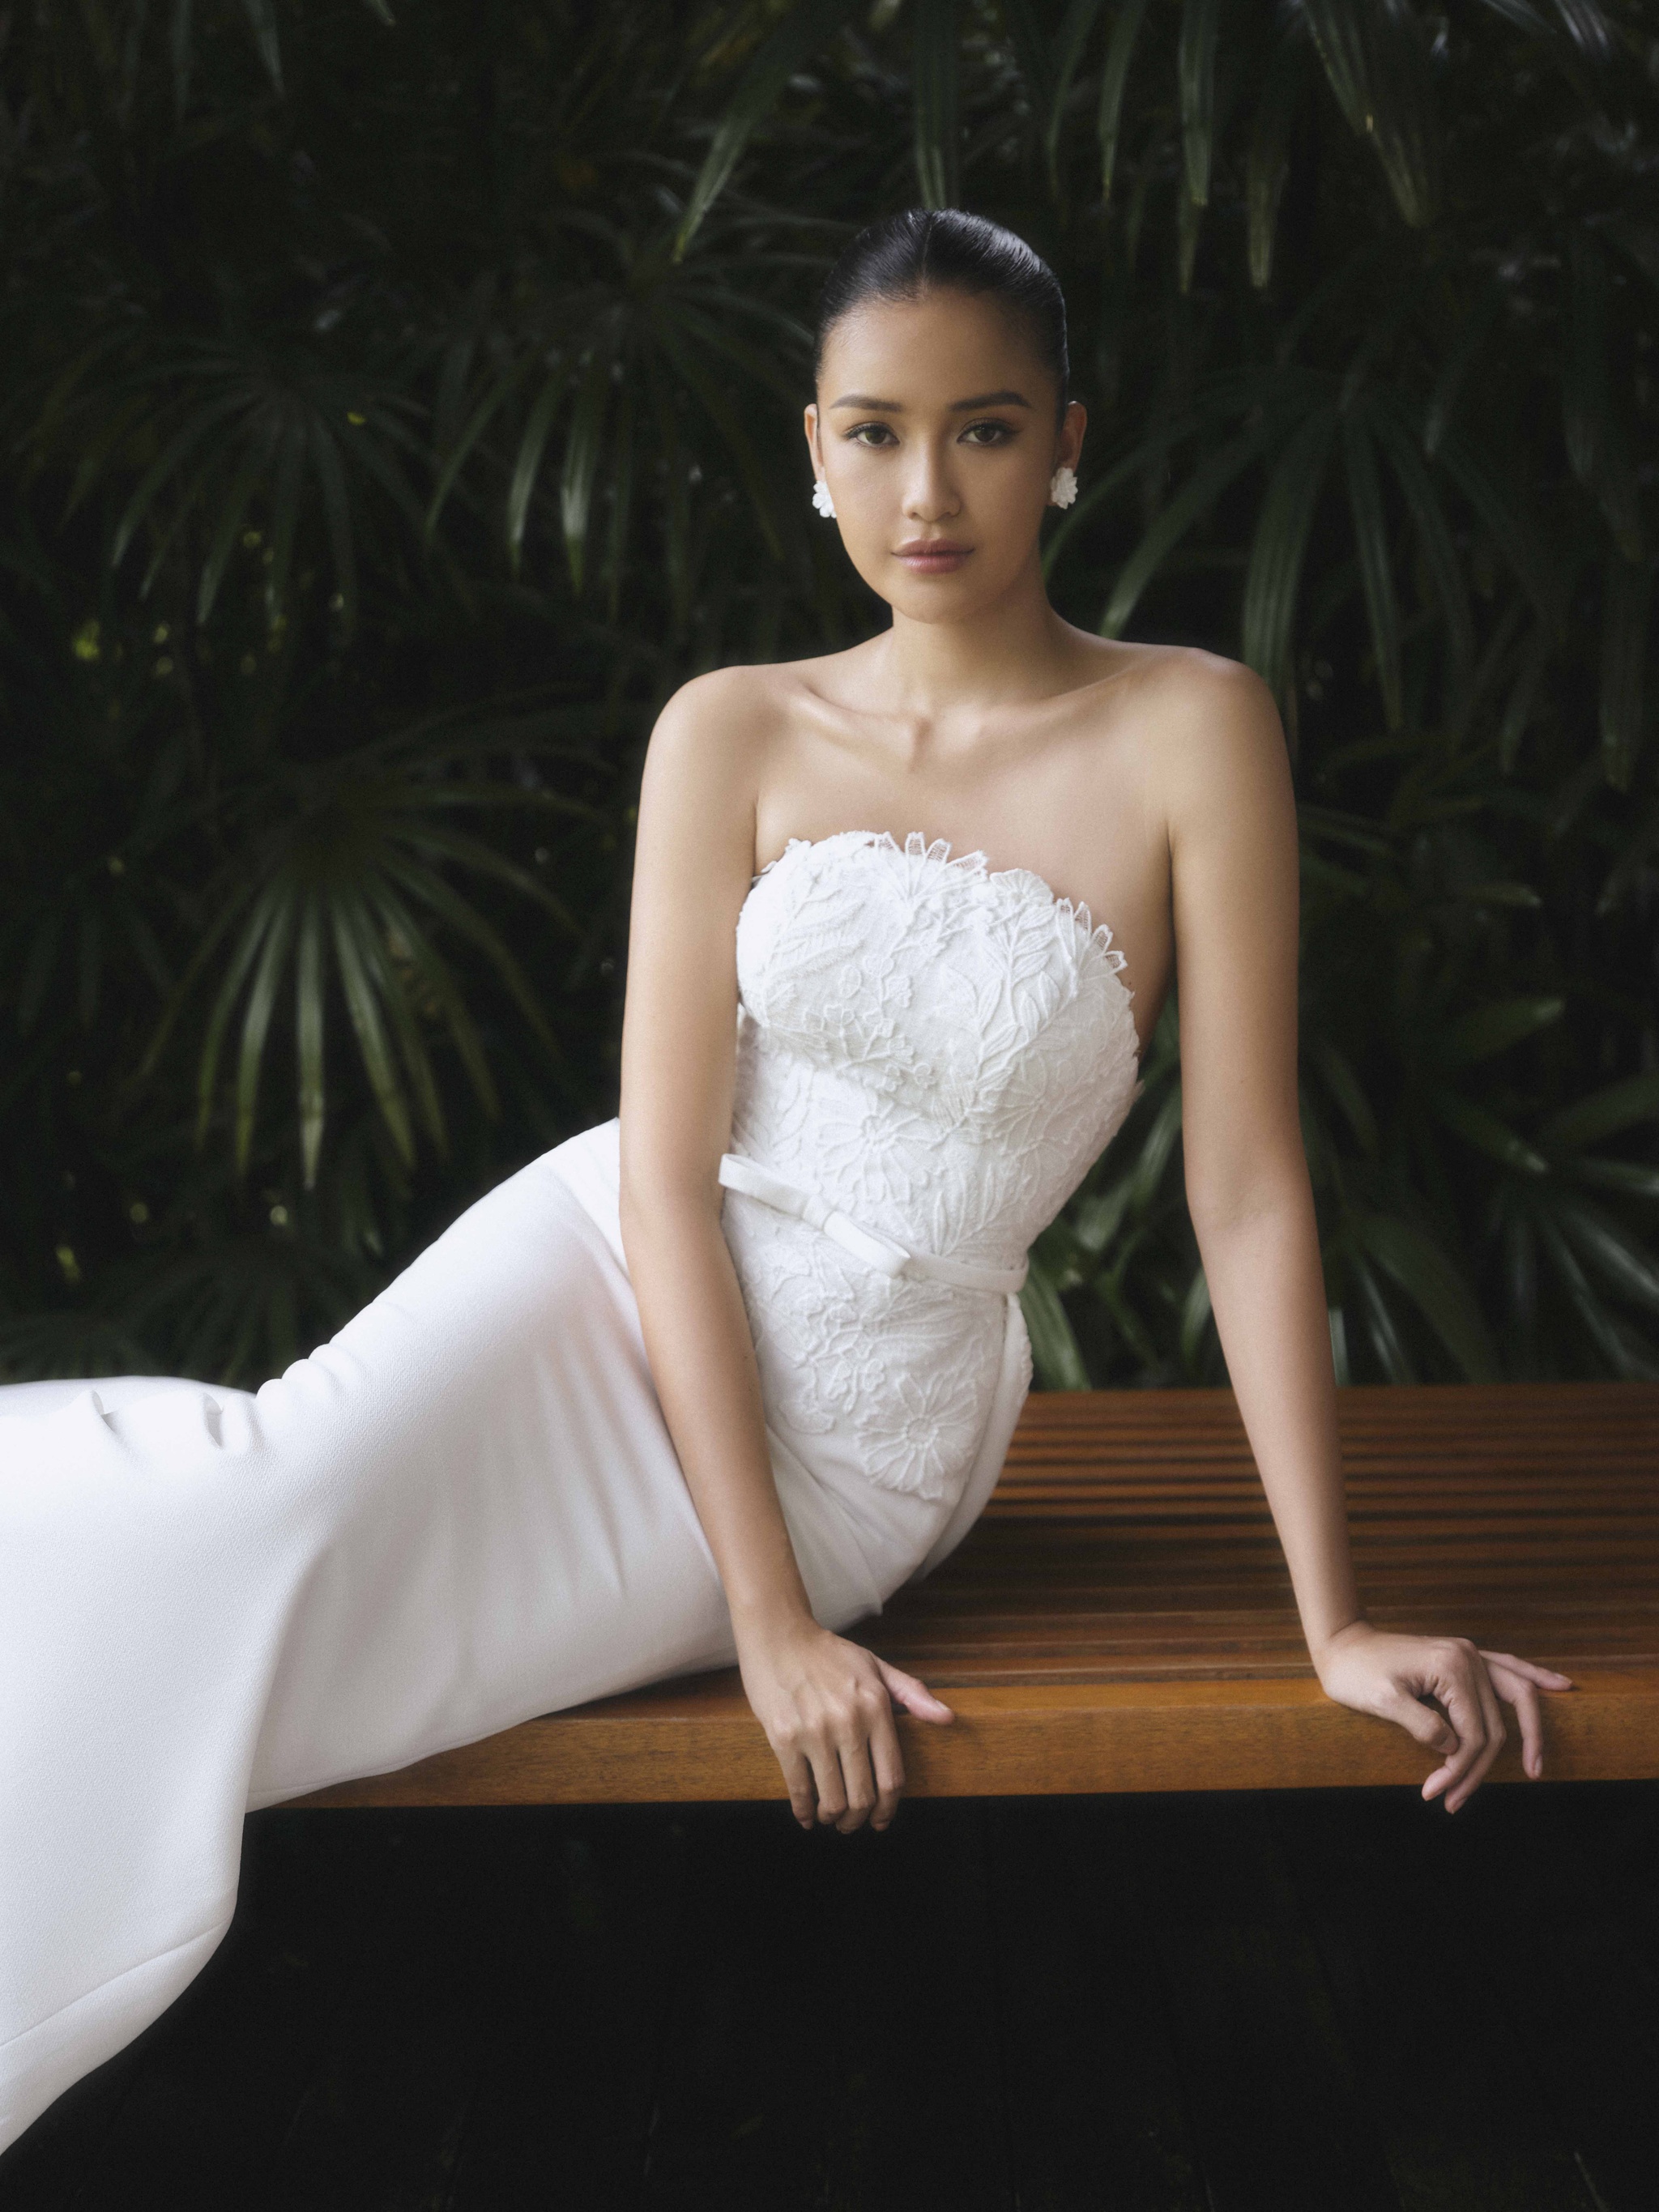 Hoa hậu Ngọc Châu quyến rũ khi mặc váy cưới - ảnh 1